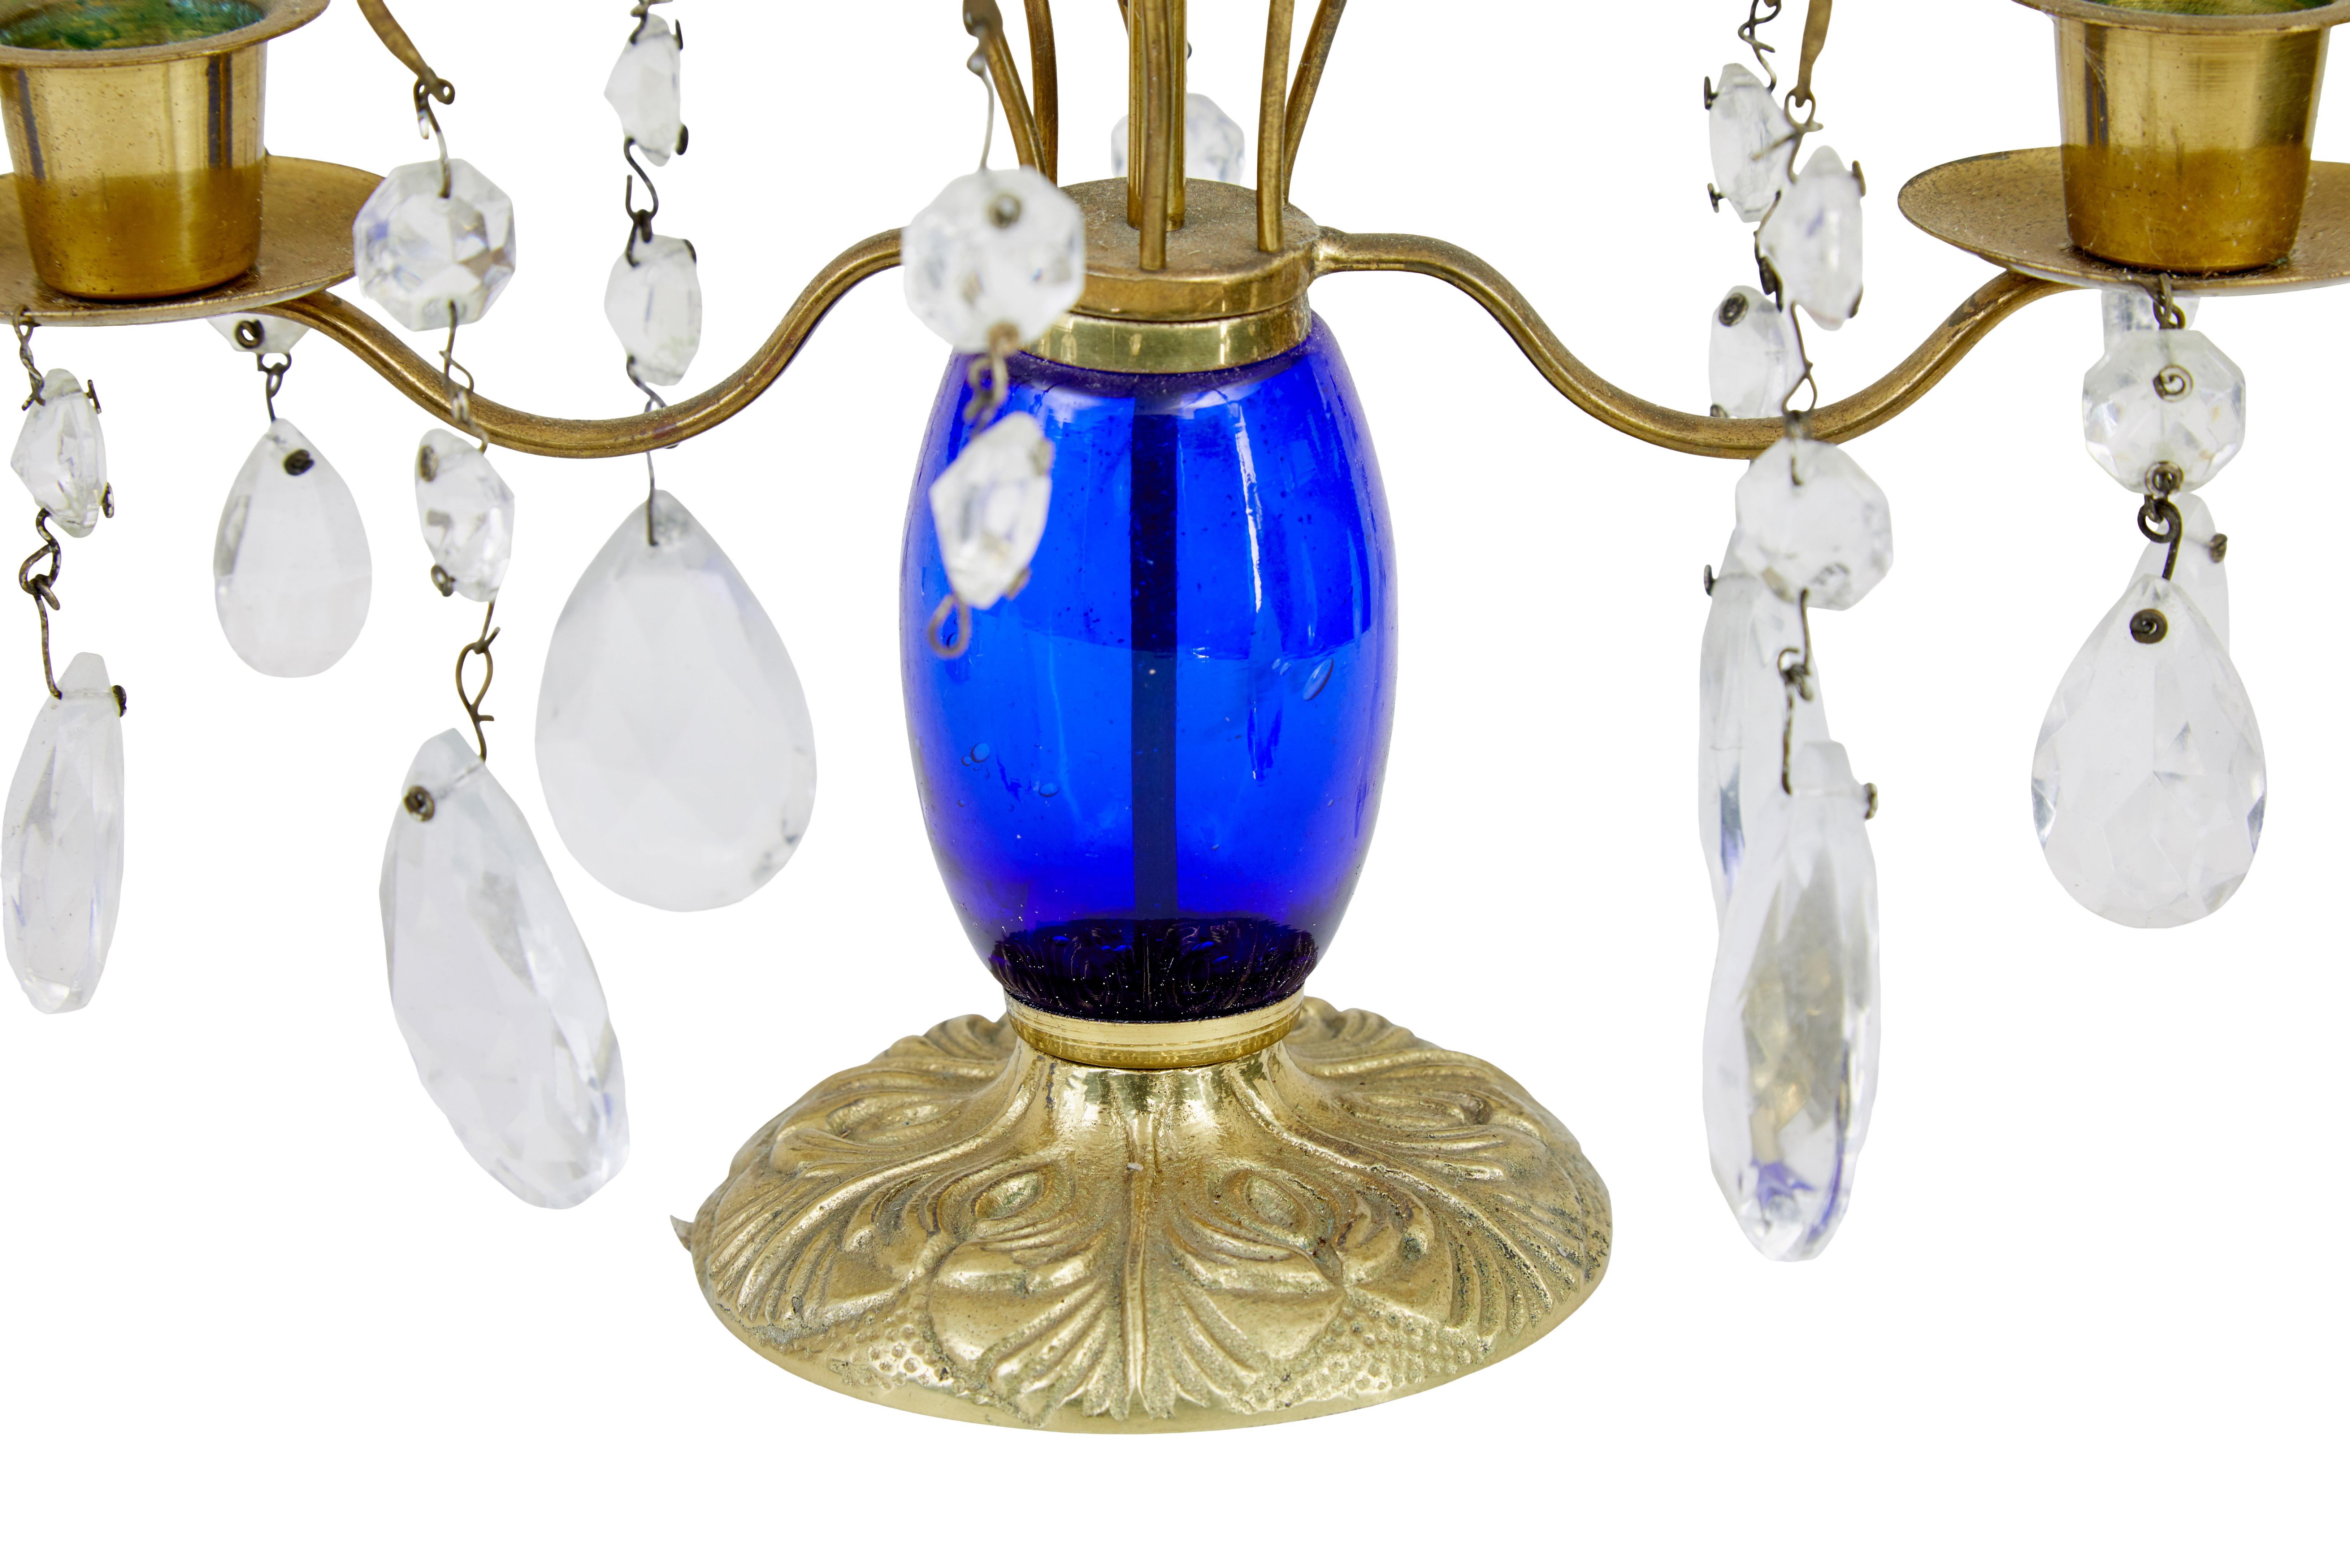 Paire de chandeliers décoratifs en laiton et verre taillé des années 1950.

Tige et bras en laiton, ornés de verre taillé. Tige bleu bristol. Il manque 3 gouttes, mais l'acheteur devrait pouvoir se les procurer facilement.

Une pièce magnifique pour